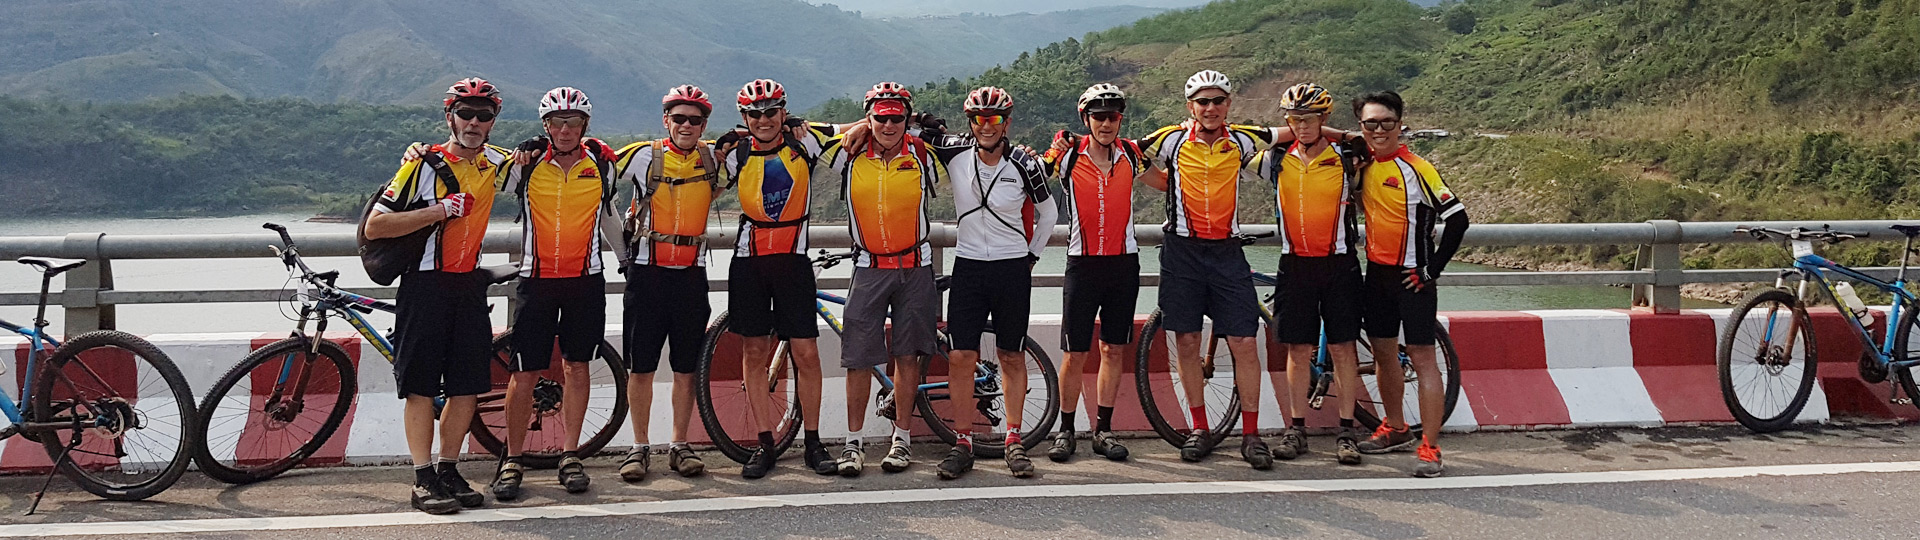 Northern Laos Biking Loop Tour – 5 Days